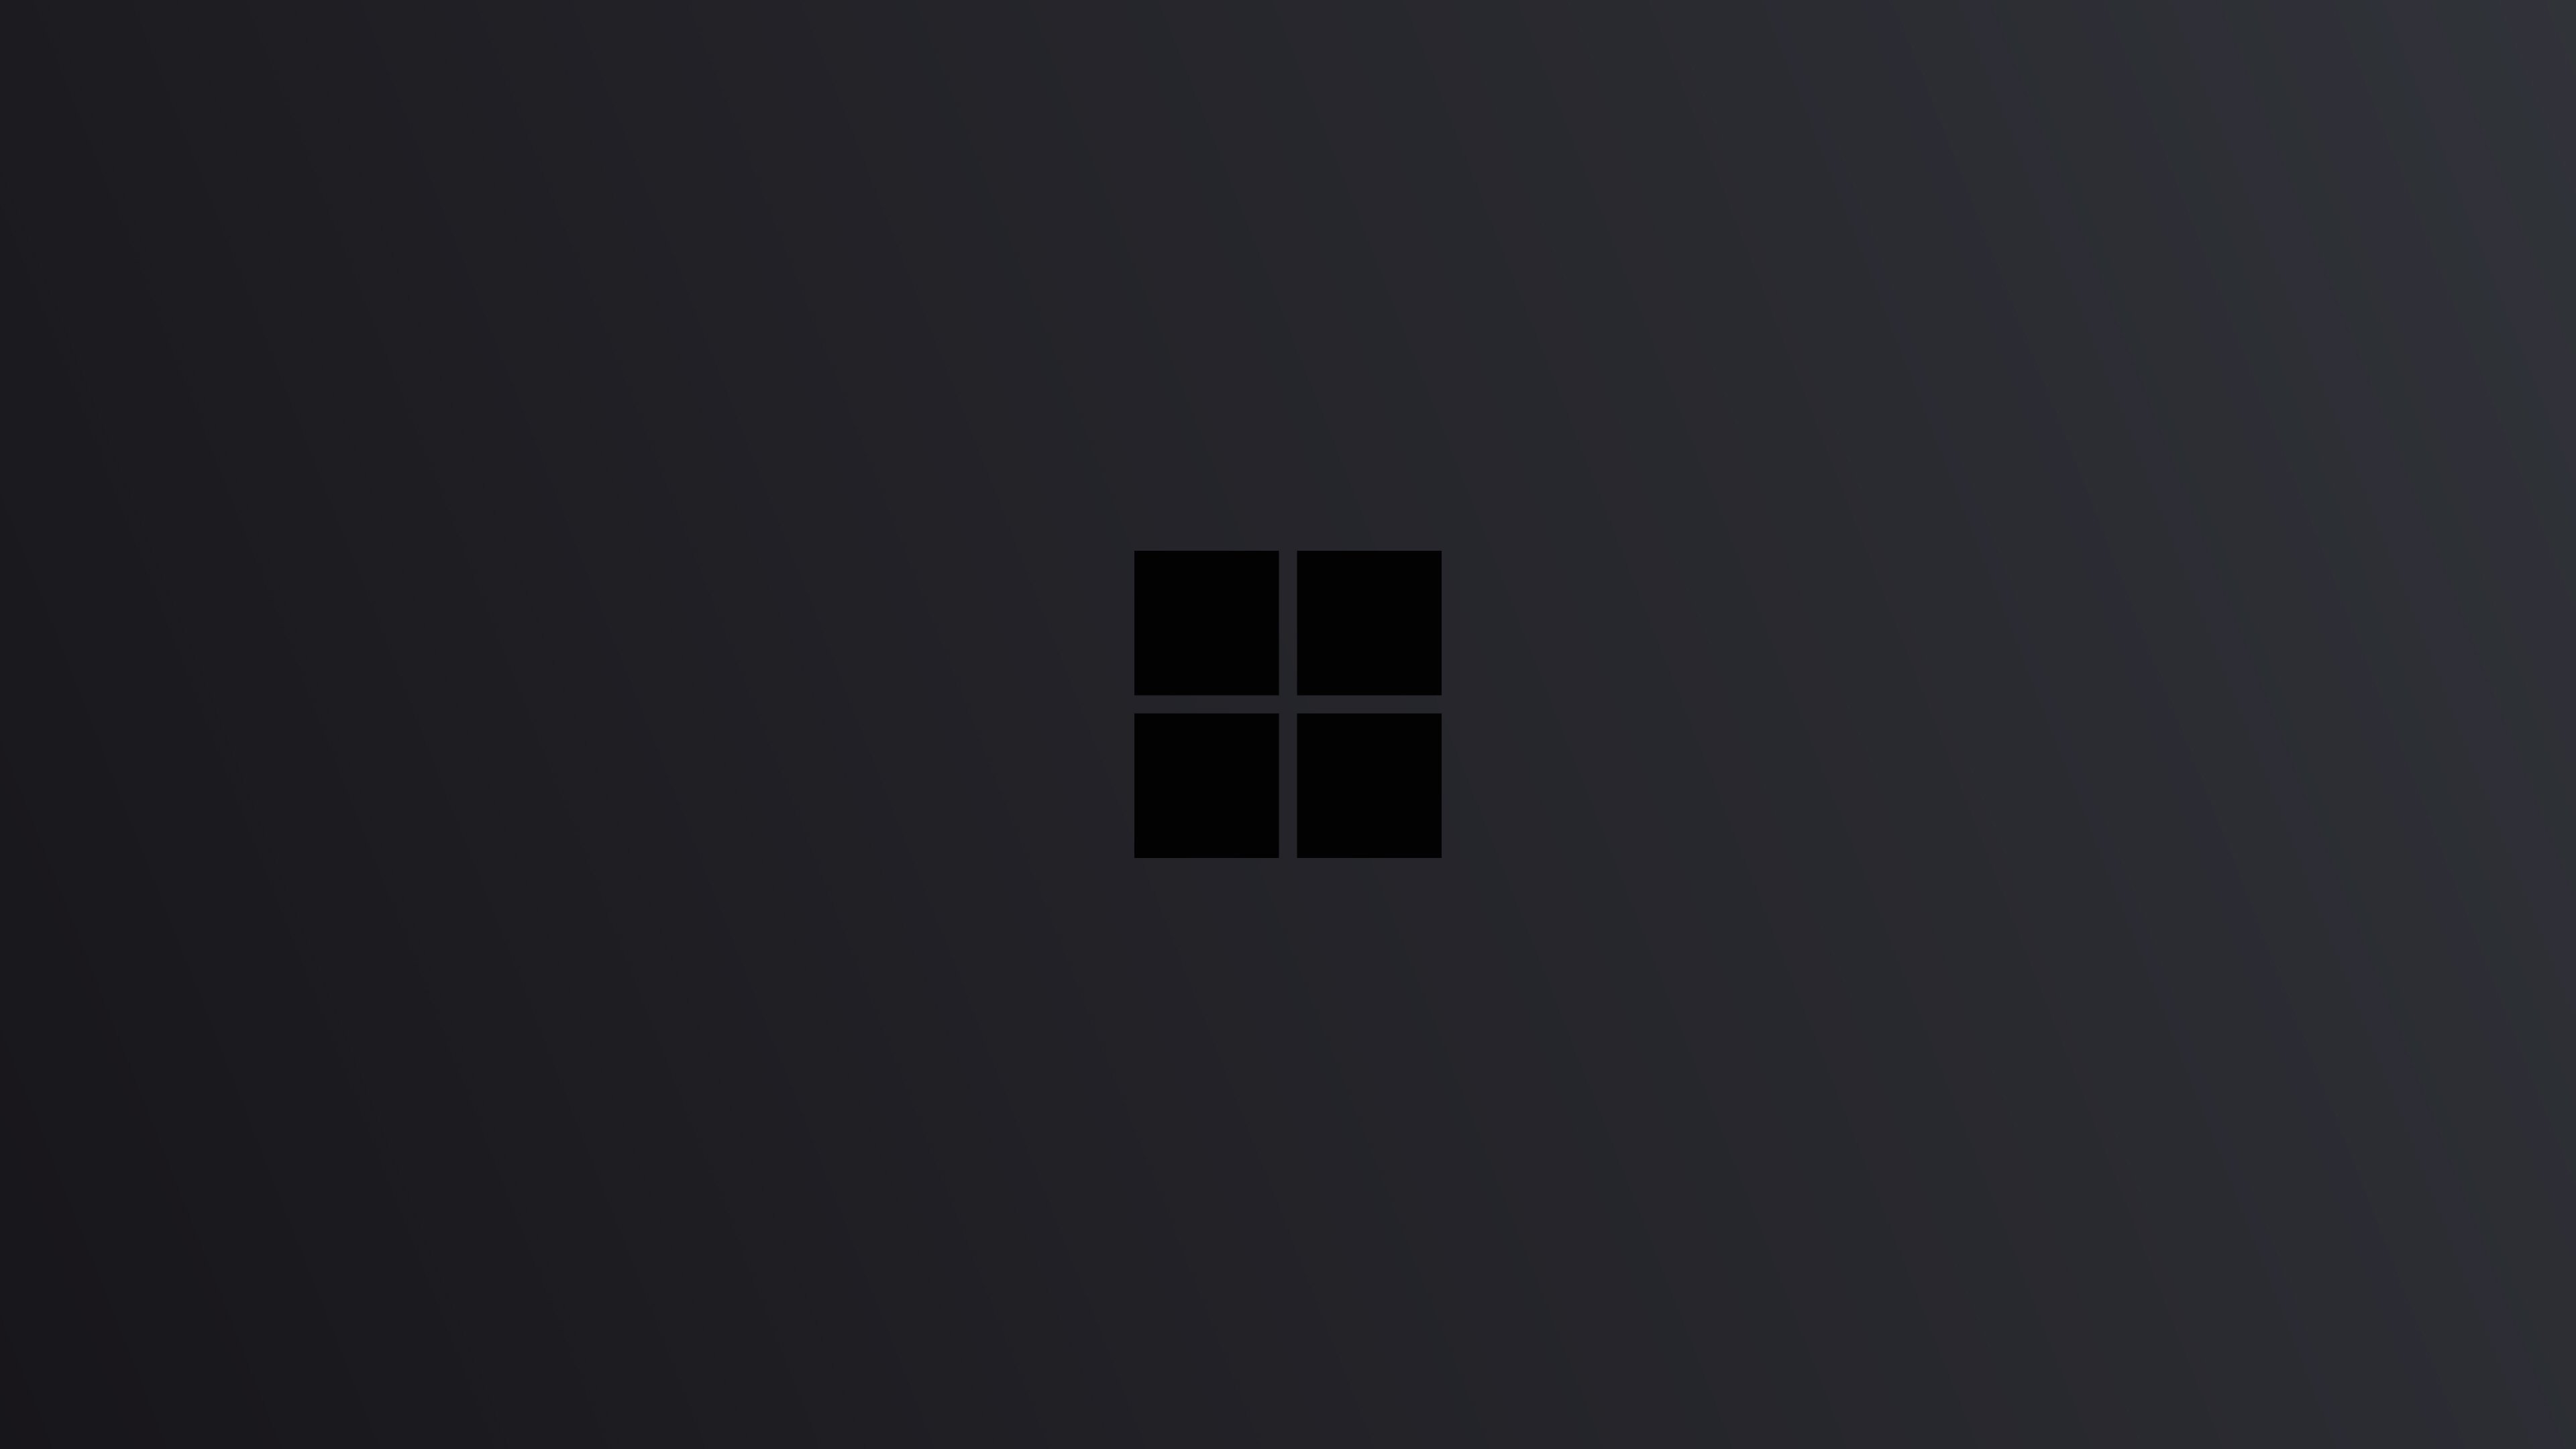 Dark Windows 10 Wallpaper Free Dark Windows 10 Background